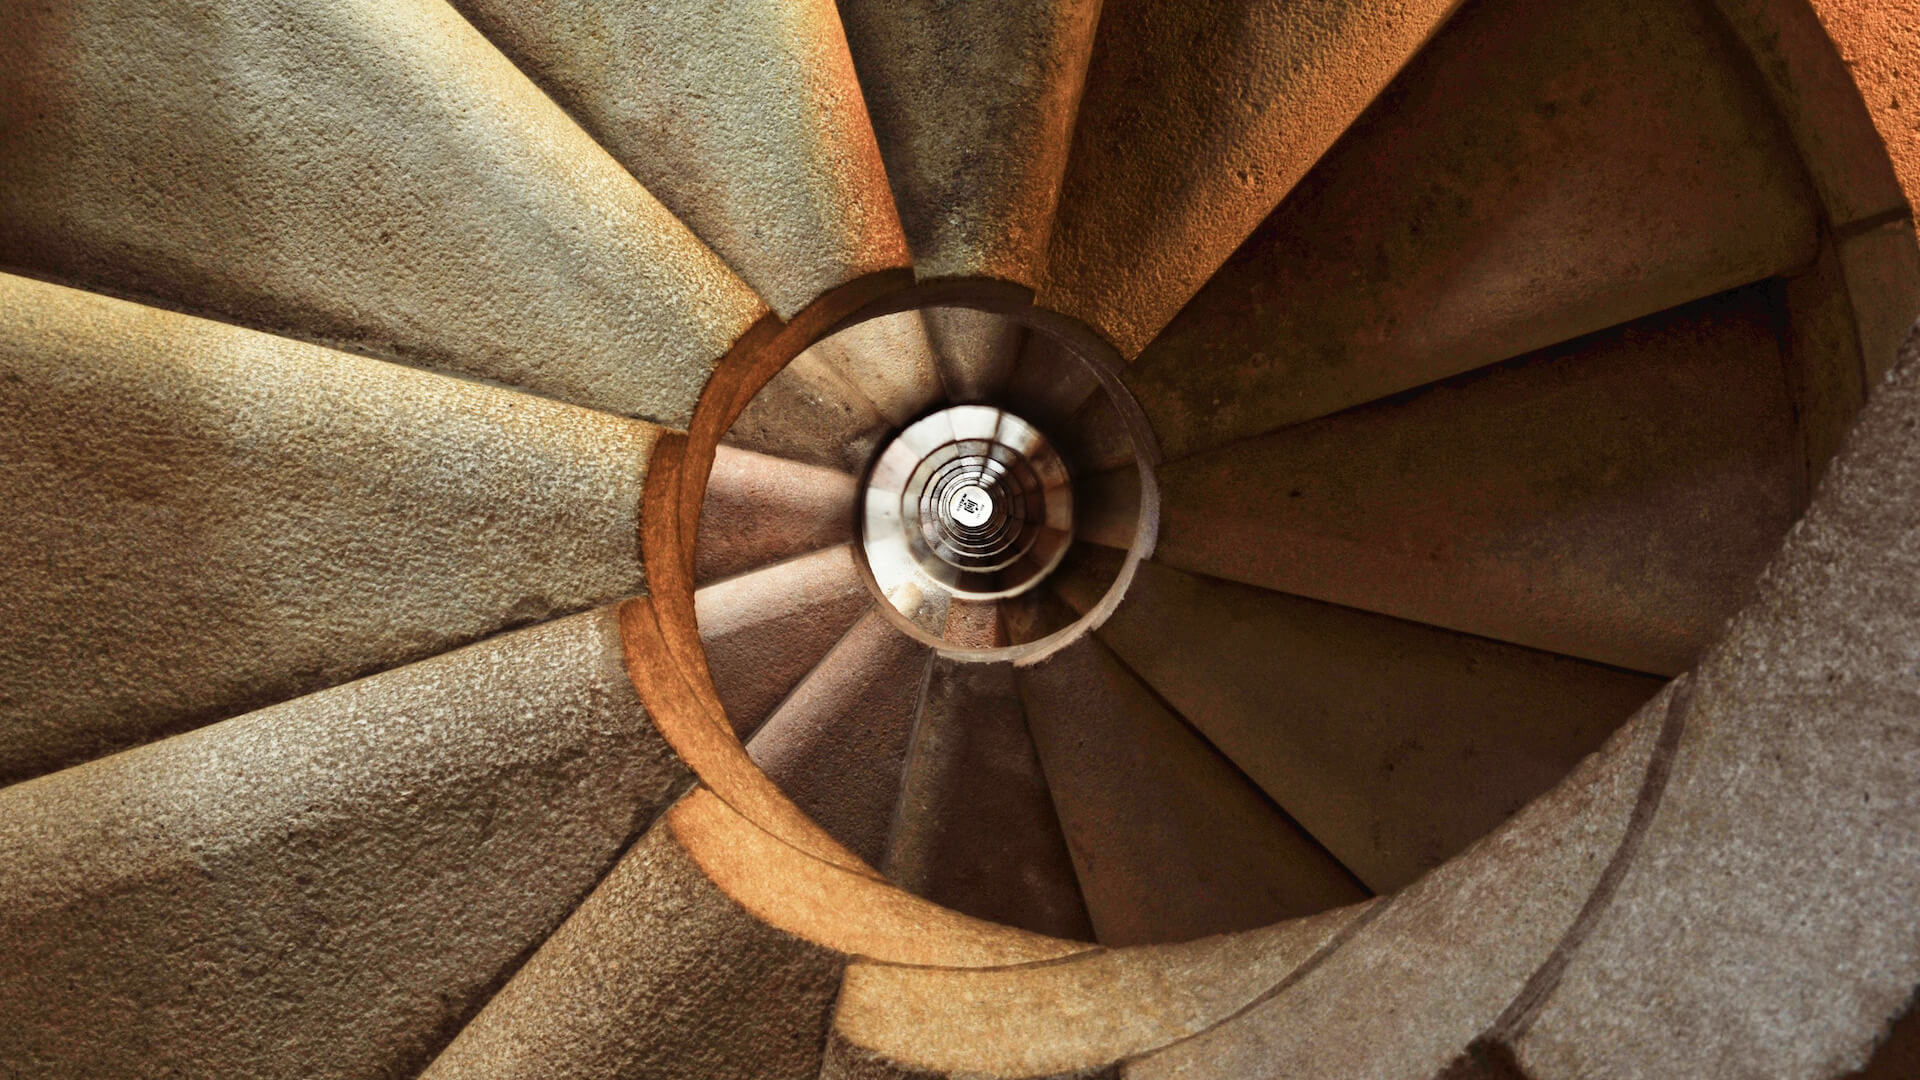 Escalier en spirale